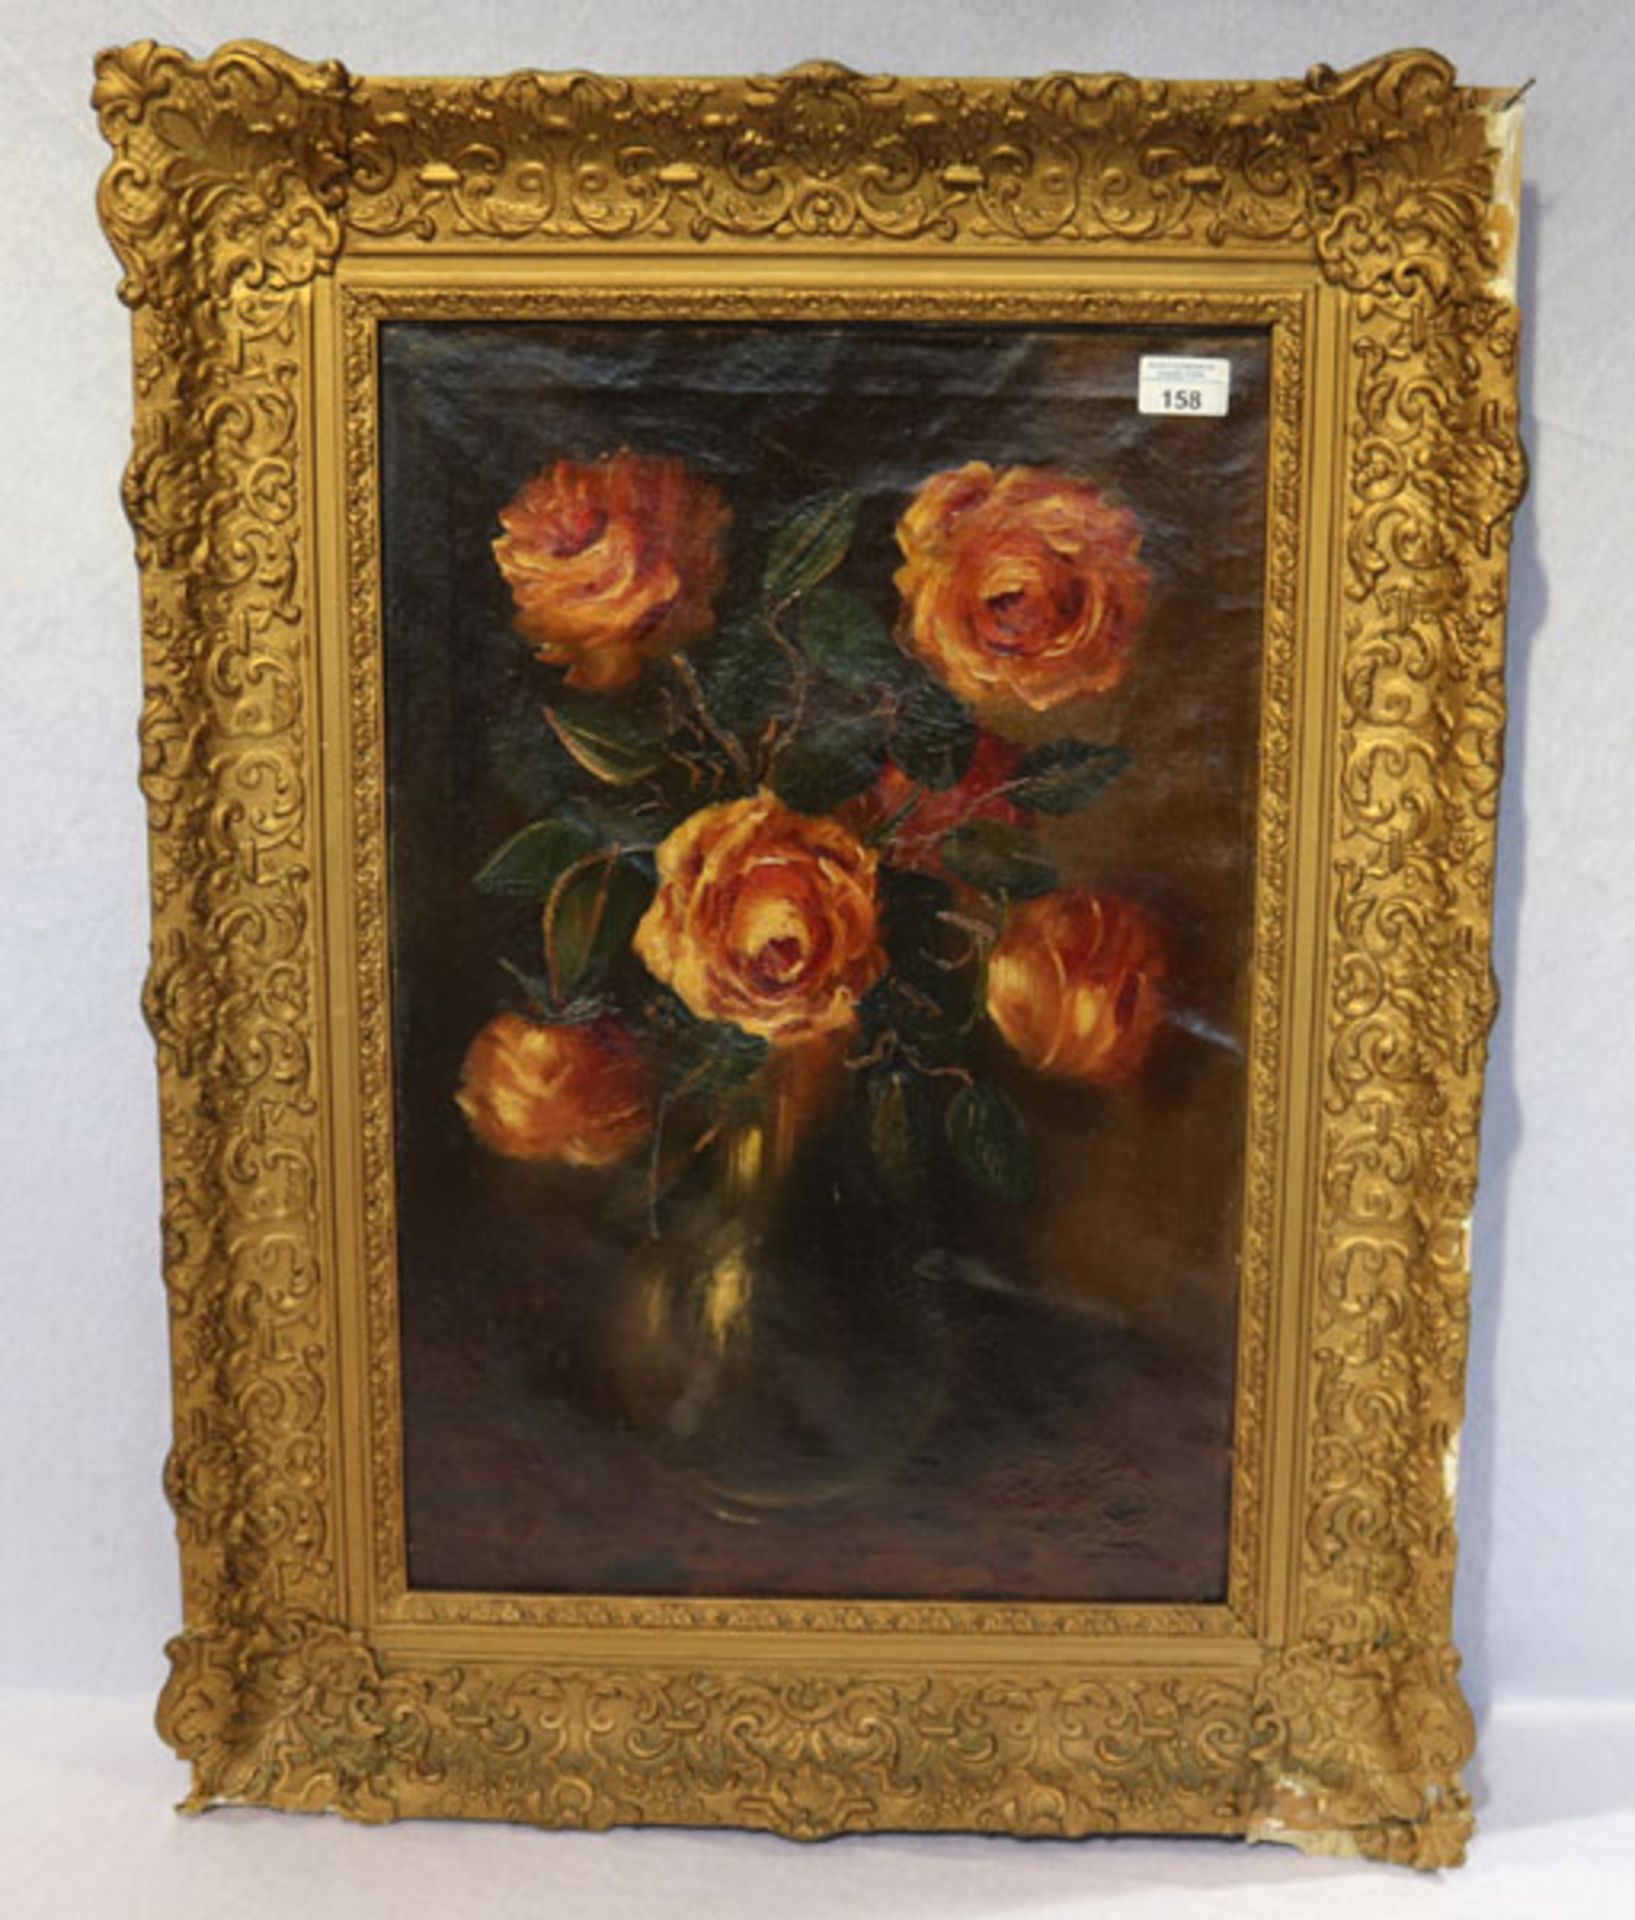 Gemälde ÖL/LW 'Blumenstillleben - Rosen in Vase', LW wellig, gerahmt, Rahmen beschädigt, incl.